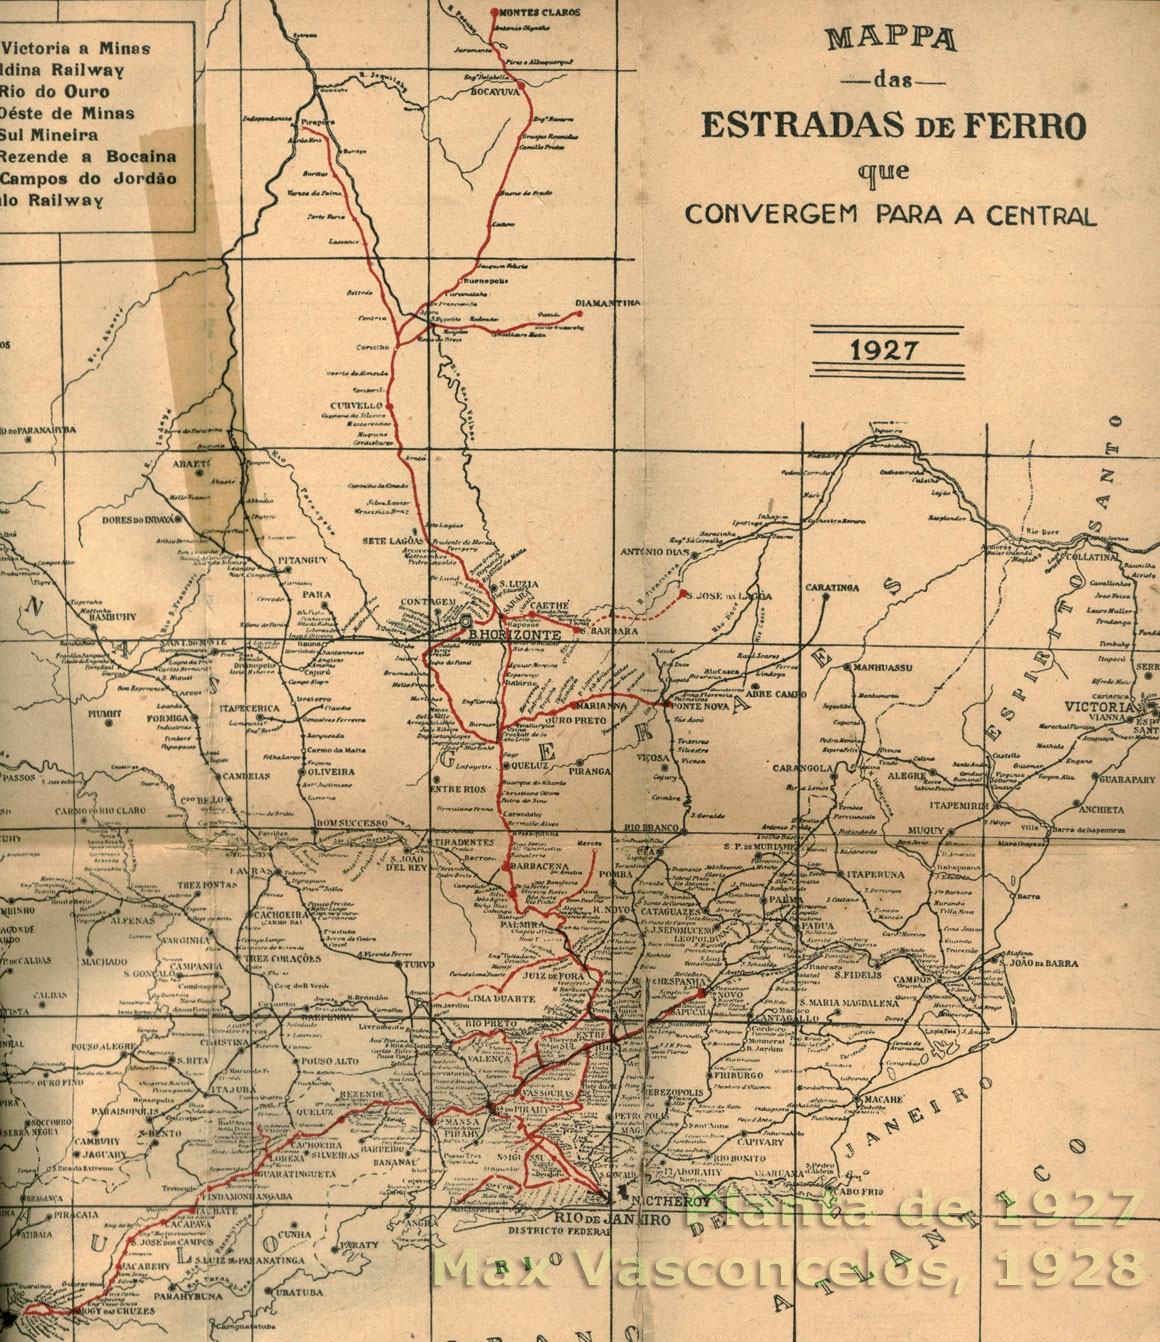 Mapa da Estrada de Ferro Central do Brasil e das ferrovias convergentes em 1927, com links para os mapas parciais ampliados